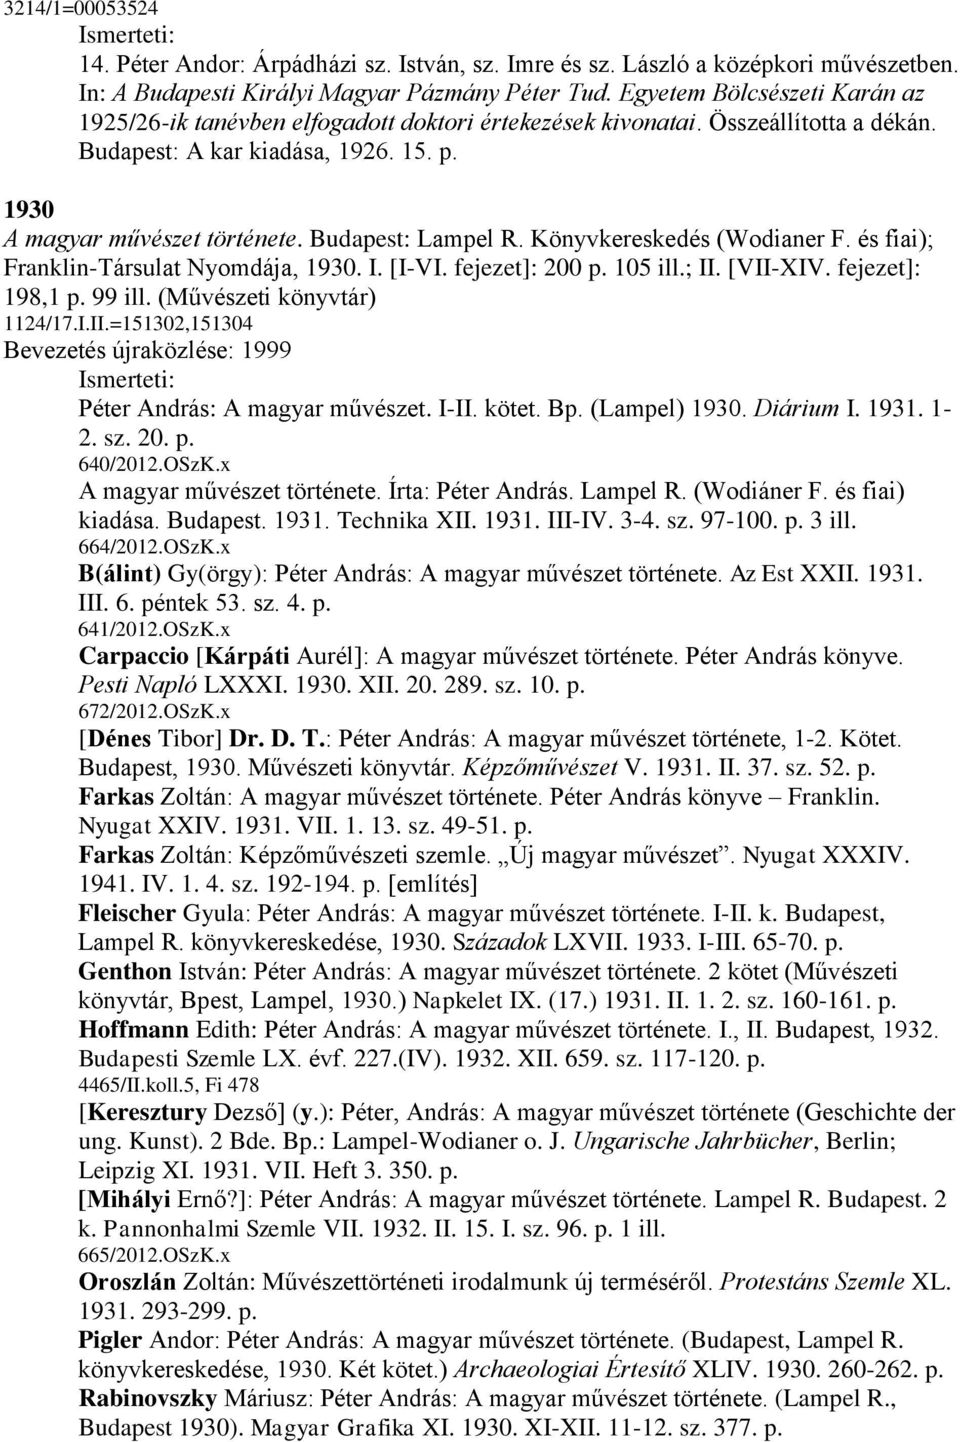 Budapest: Lampel R. Könyvkereskedés (Wodianer F. és fiai); Franklin-Társulat Nyomdája, 1930. I. [I-VI. fejezet]: 200 p. 105 ill.; II. [VII-XIV. fejezet]: 198,1 p. 99 ill. (Művészeti könyvtár) 1124/17.